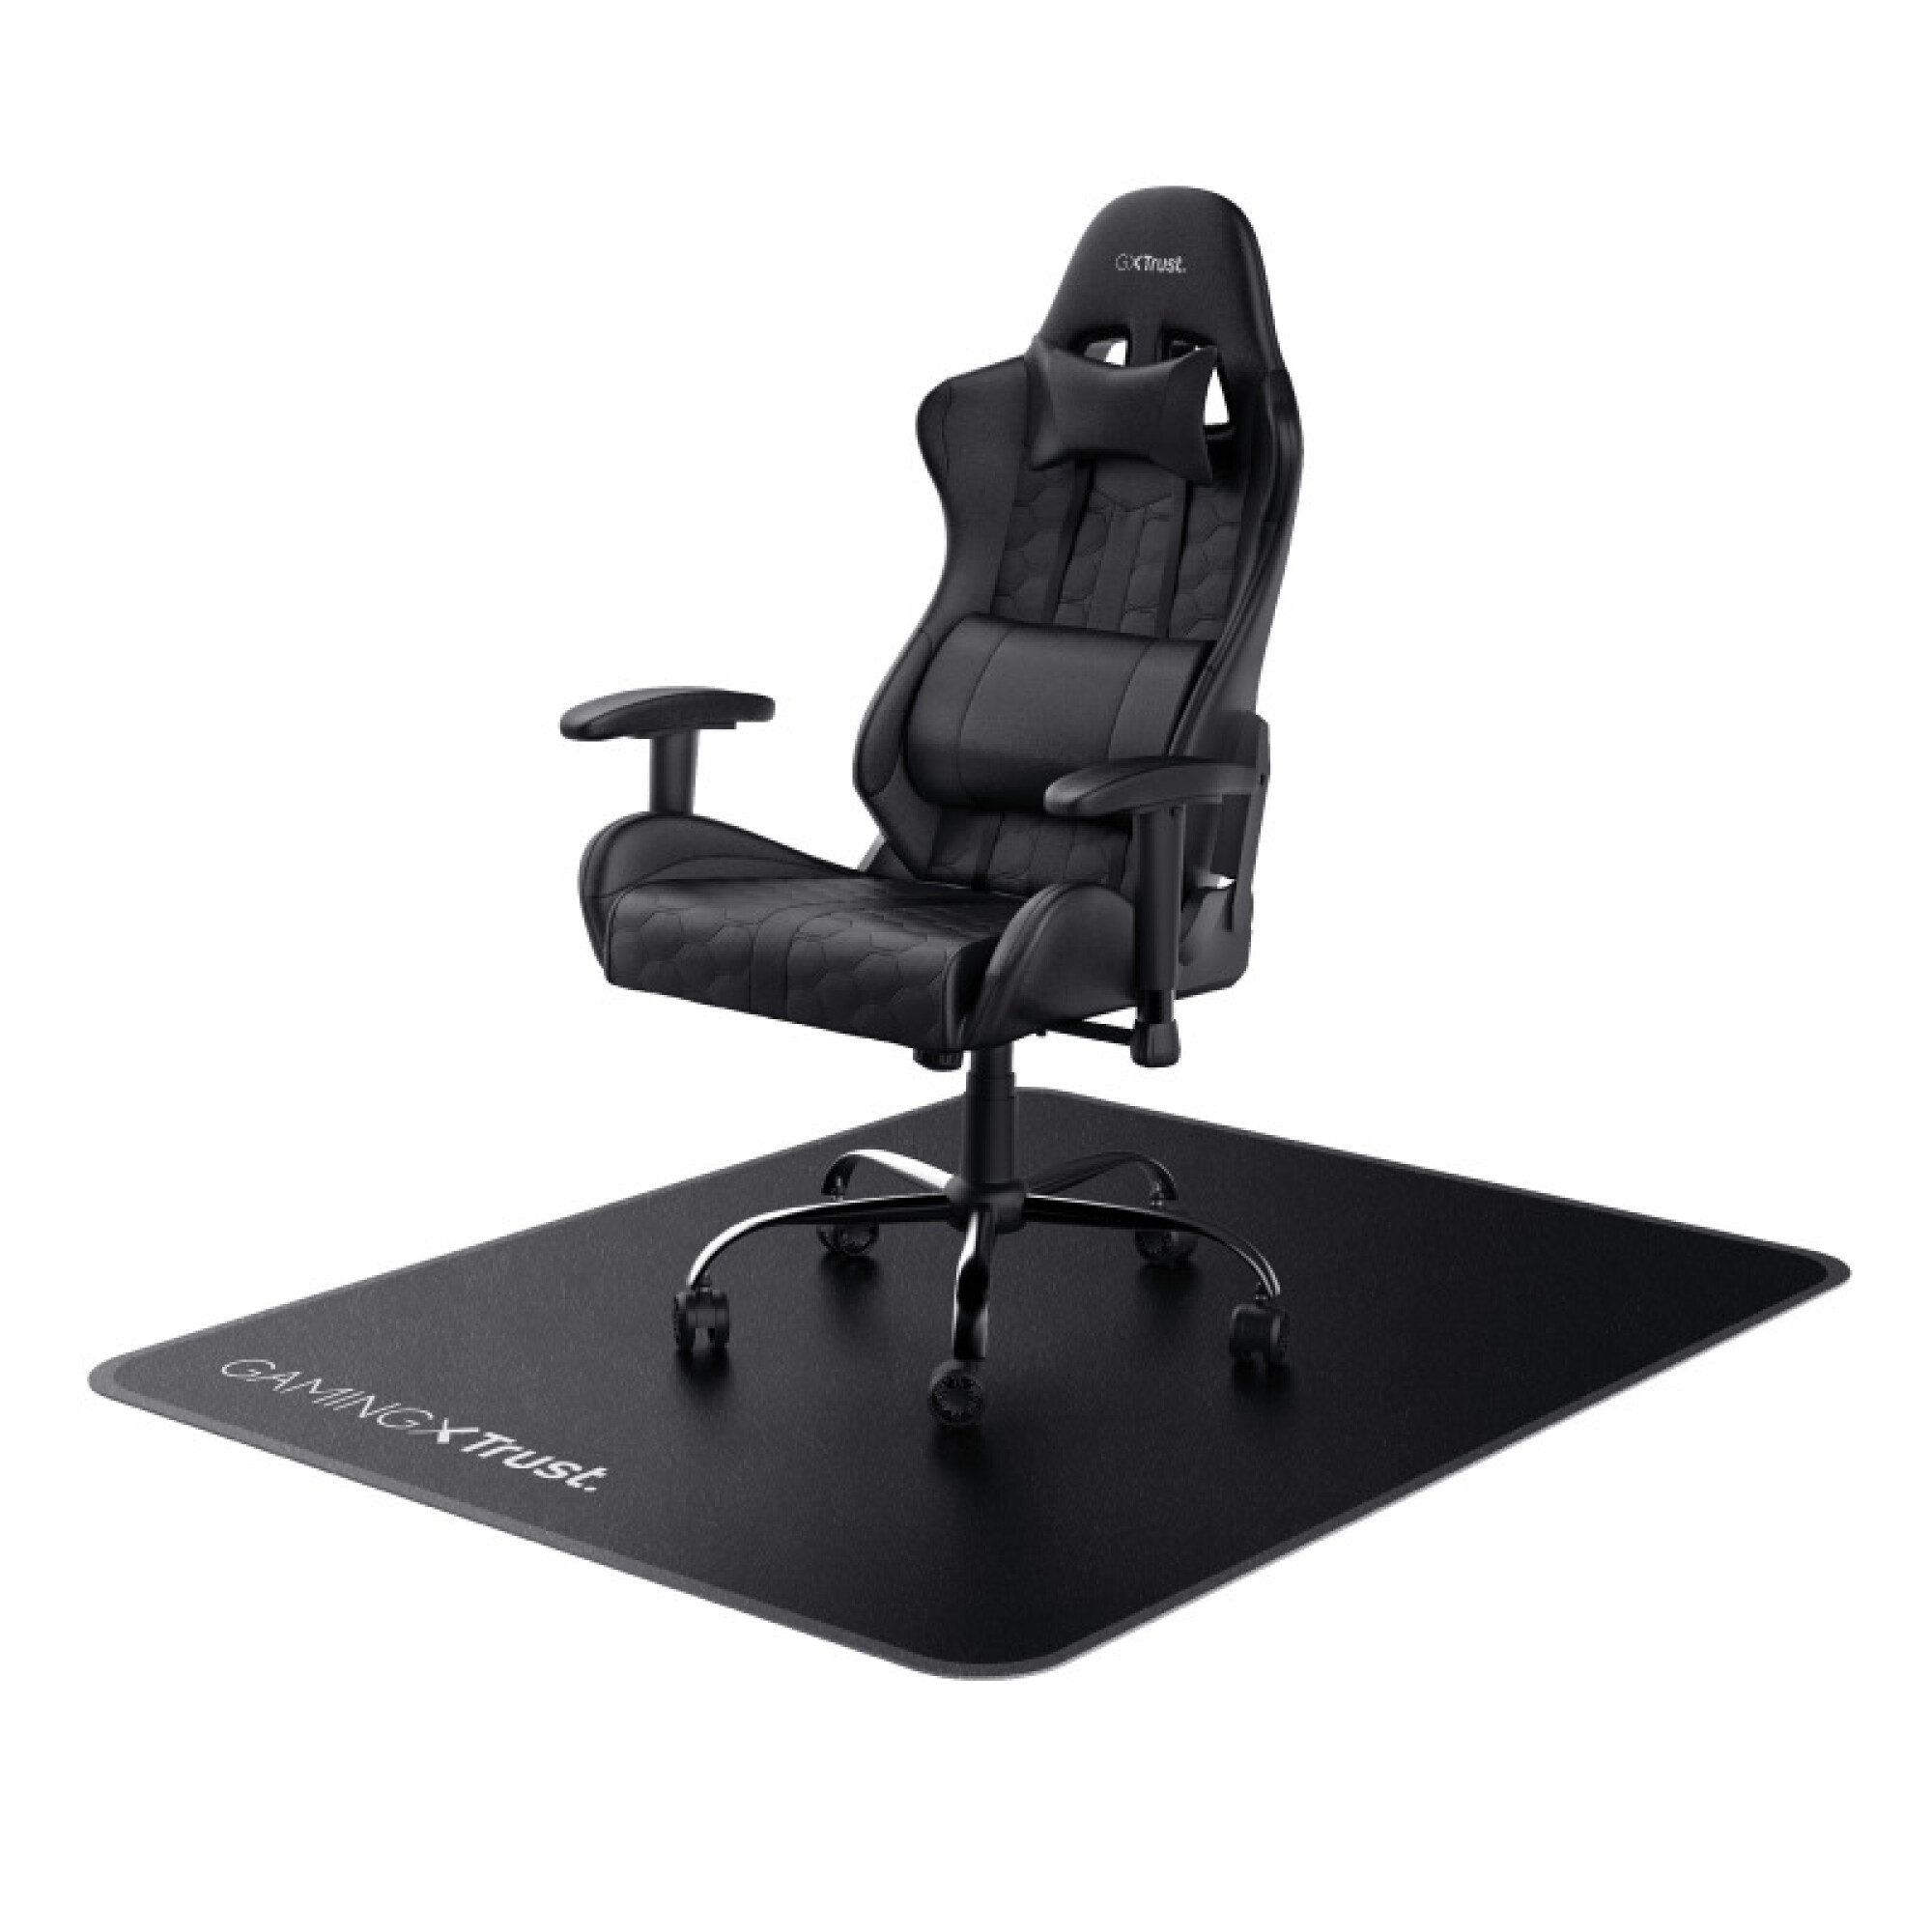  Game Zone - Tapete para silla, para suelo duro, alfombra de  pelo mediano, 42 x 46 pulgadas, color negro (121563) : Productos de Oficina